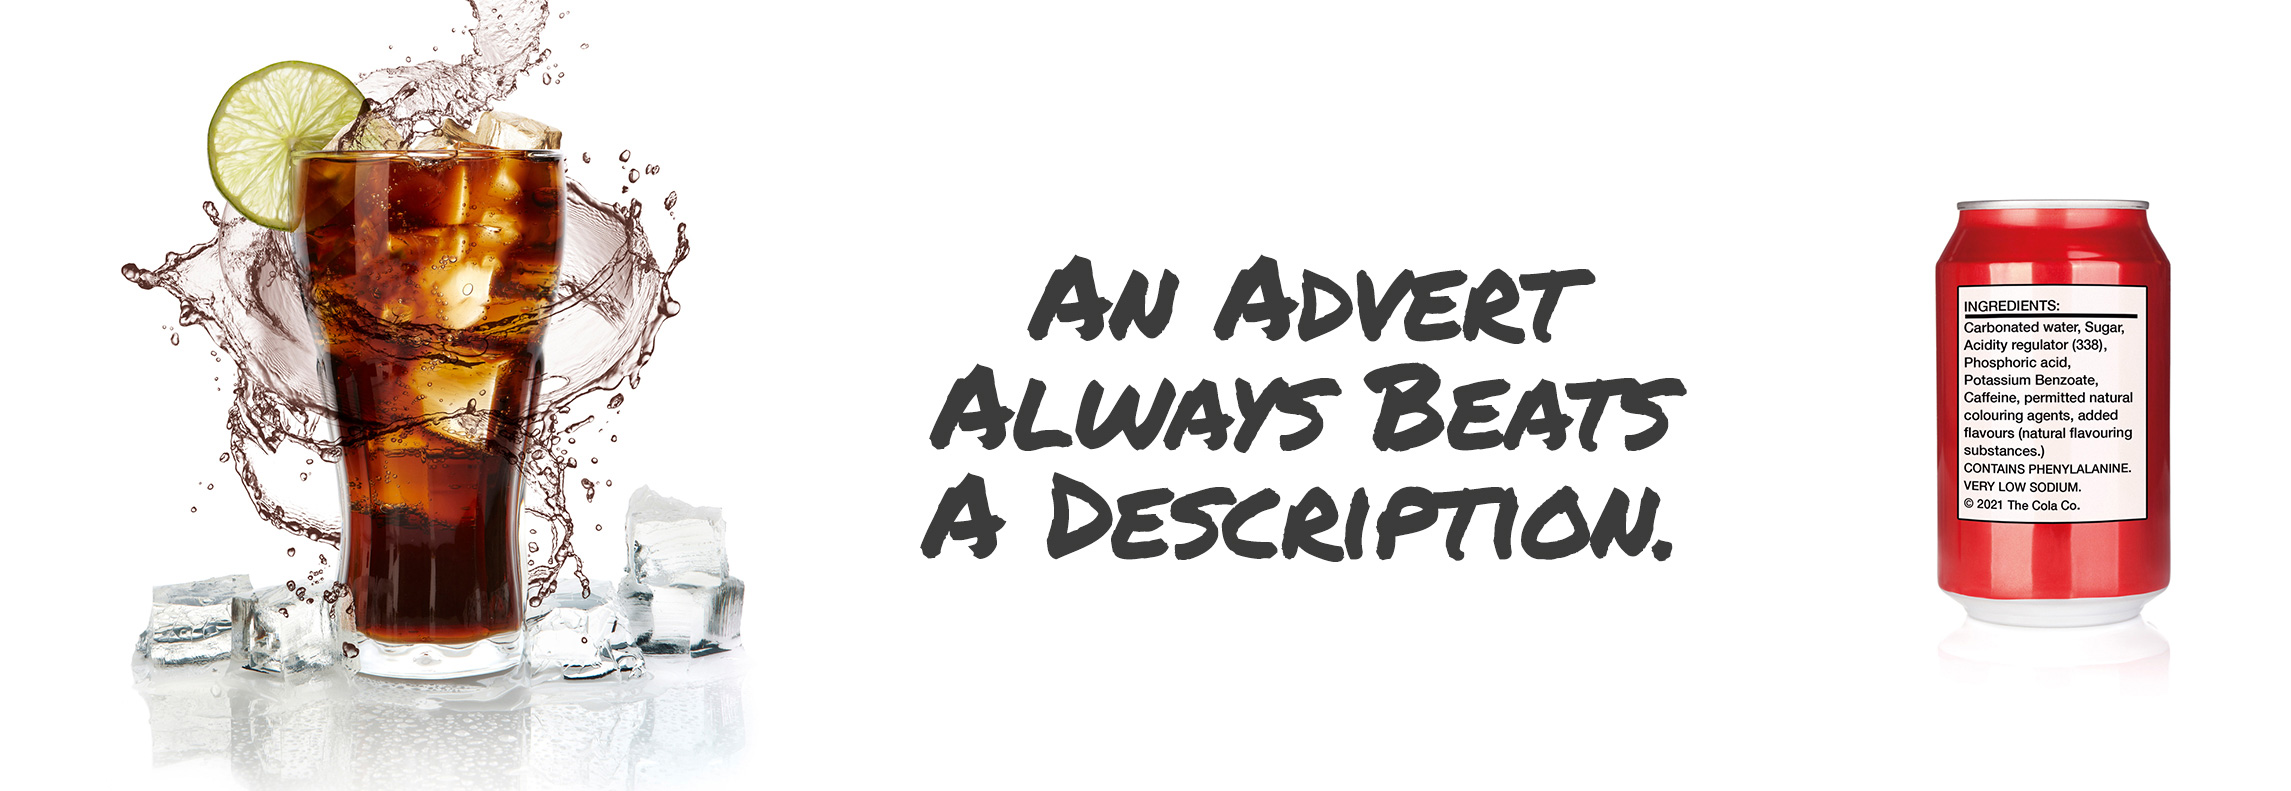 An advert always beats a description